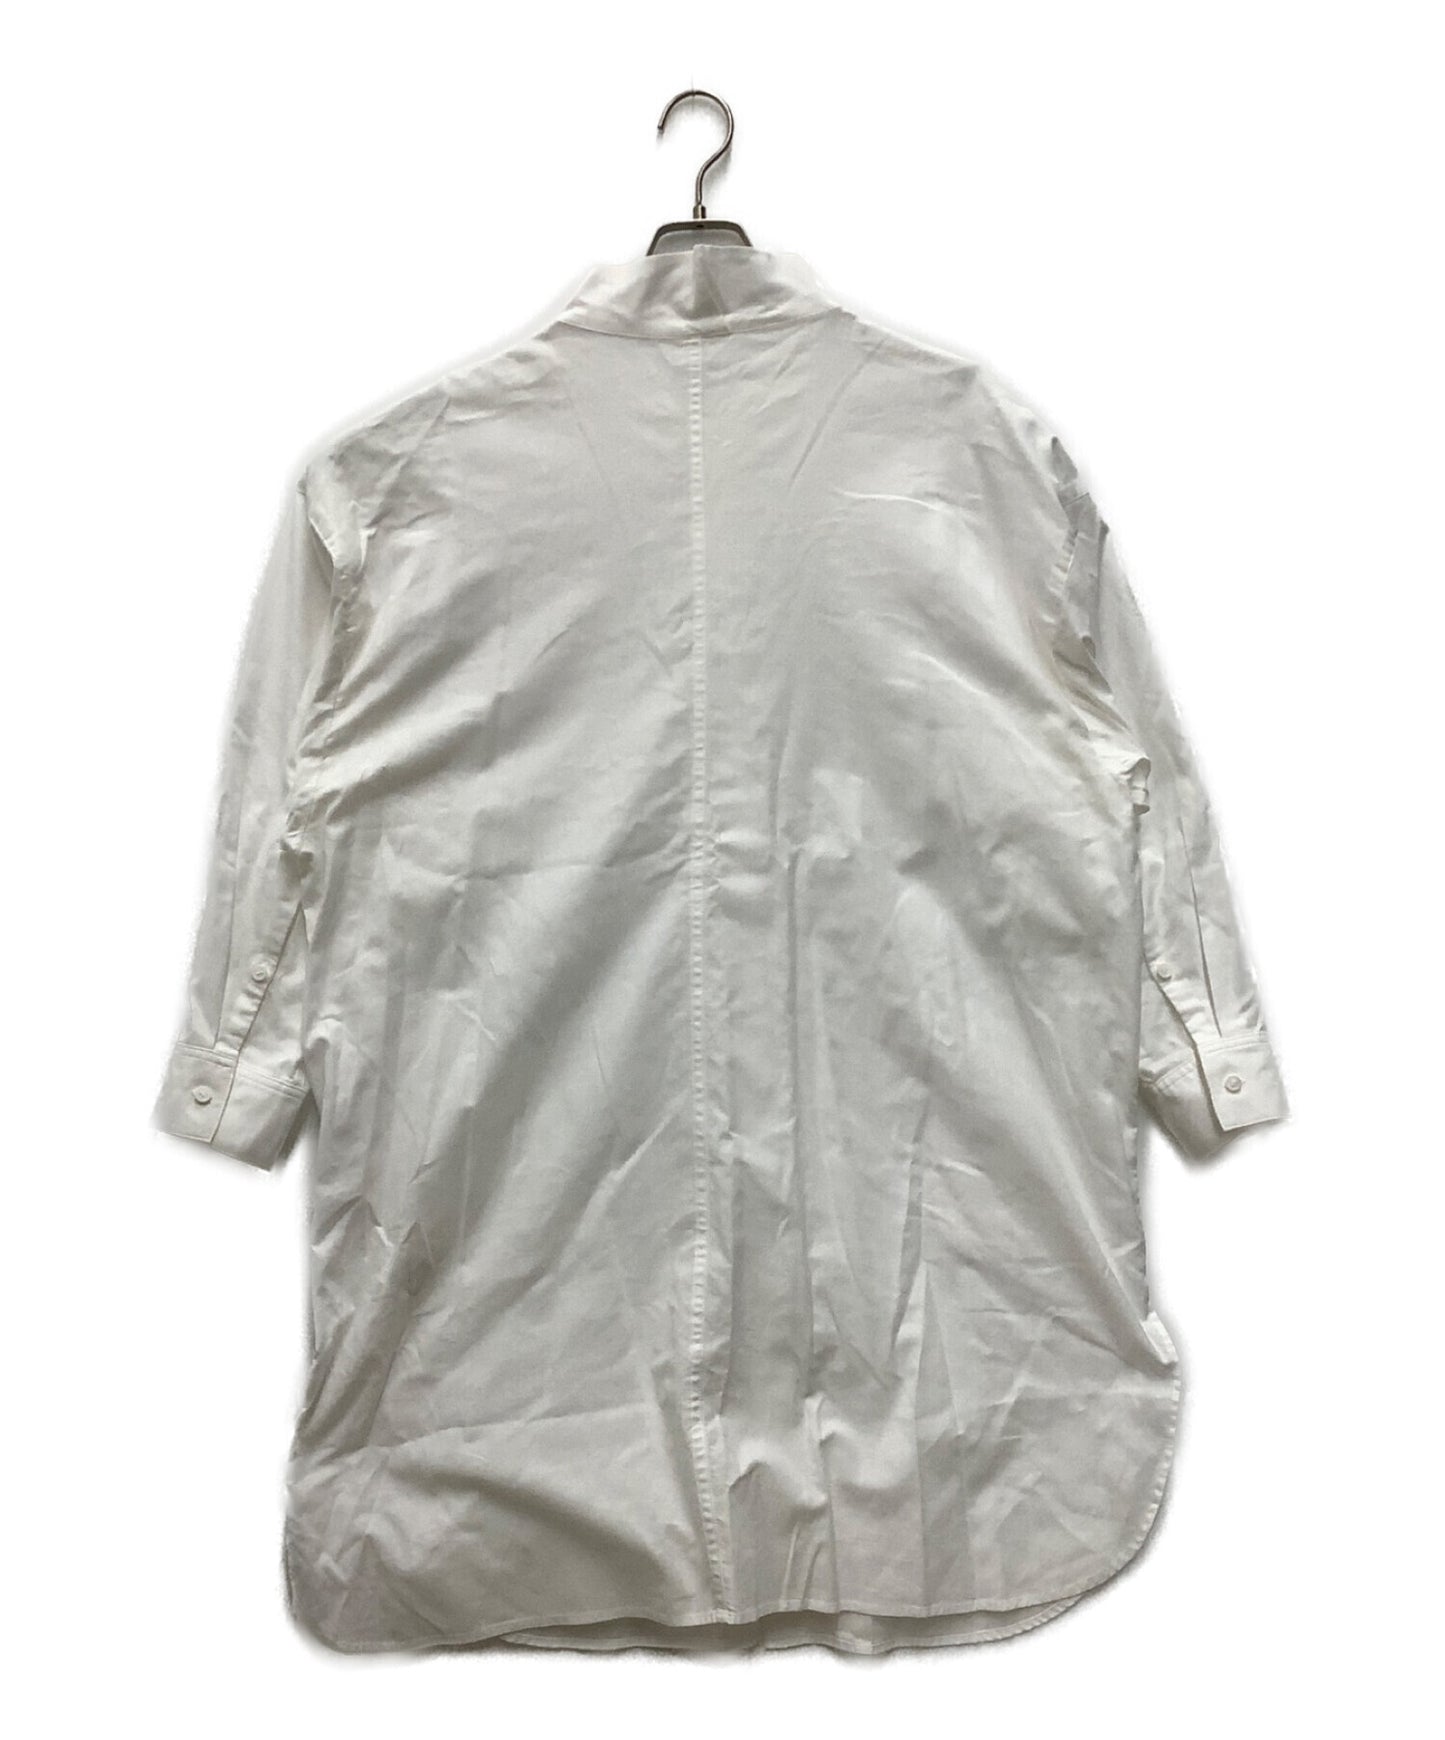 ชุดเสื้อเชิ้ต yn-d81-003